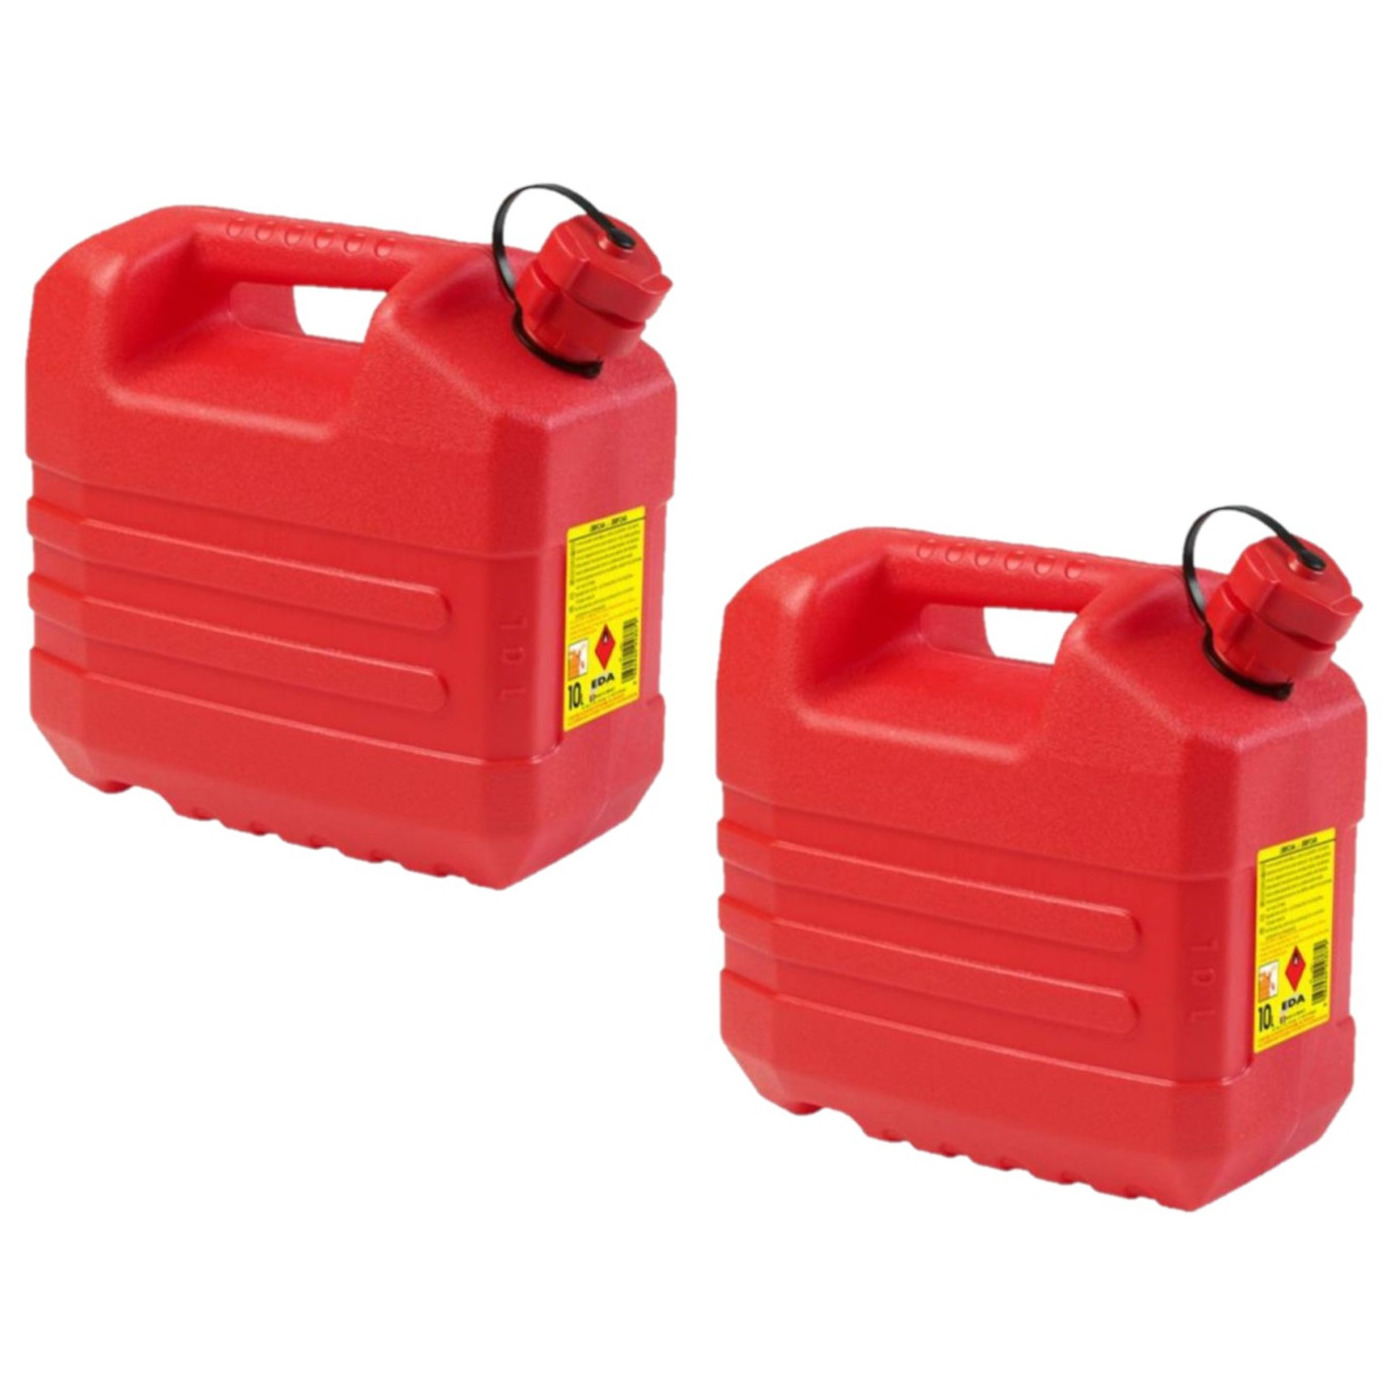 2x stuks kunststof jerrycans 10 liter rood geschikt voor gevaarlijke vloeistoffen L32 x B18 x H30 cm